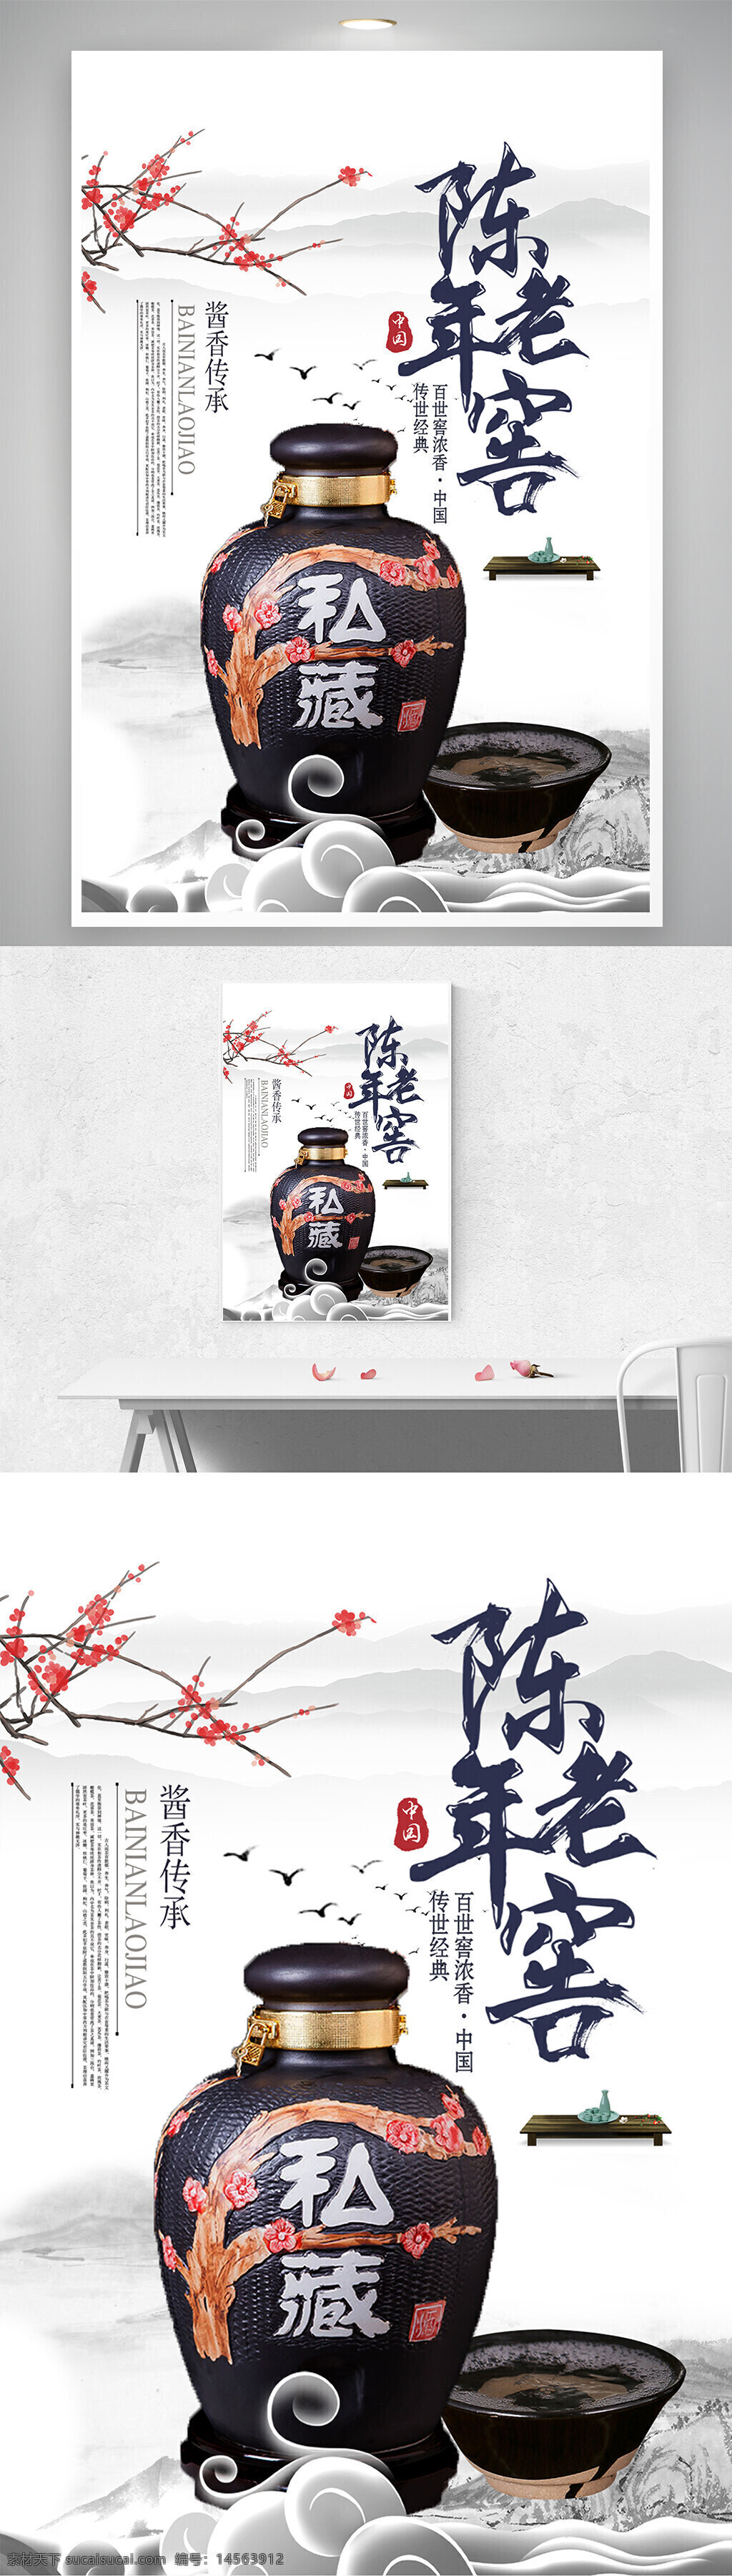 陈年 老窖 中国 传统 白酒 文化 海报